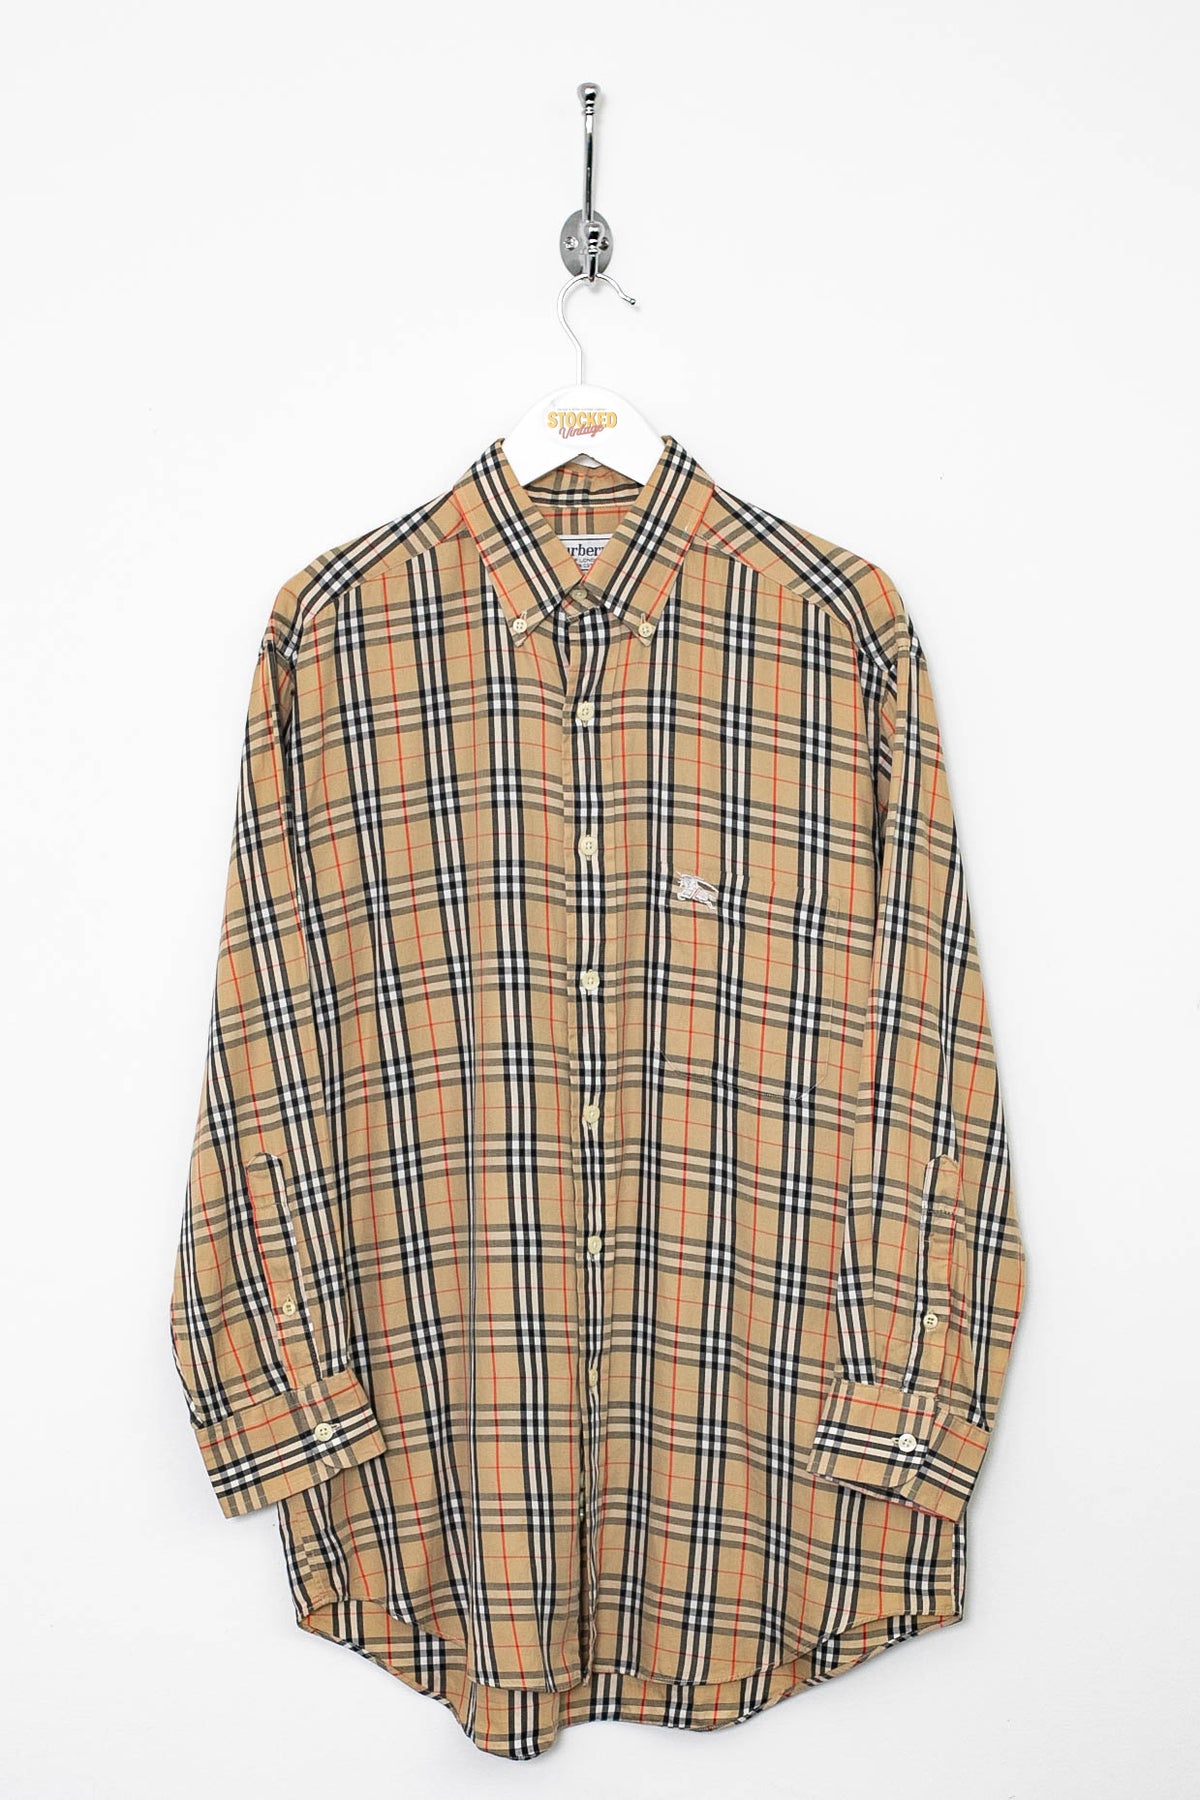 90s Burberry Nova Check Shirt (S)